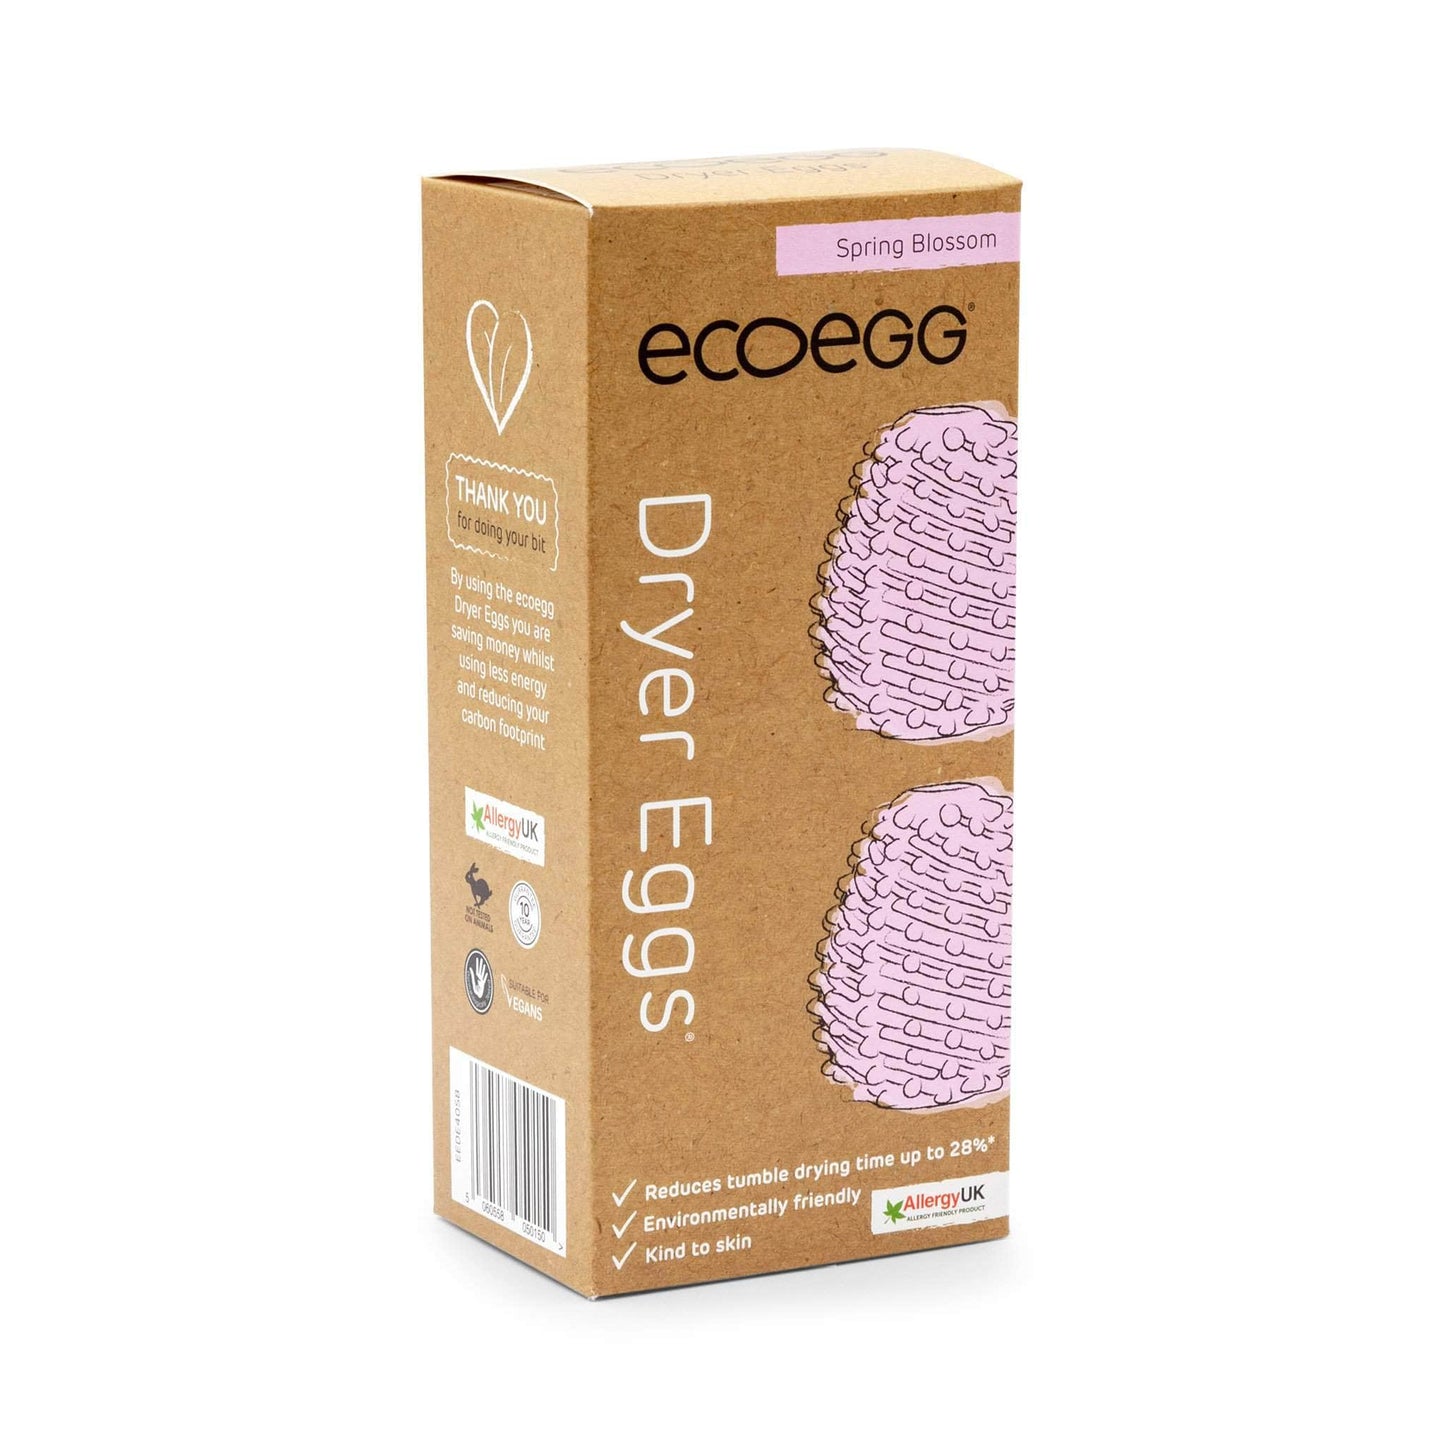 Eco Egg Laundry Eco Egg - Dryer Eggs - Spring Blossom